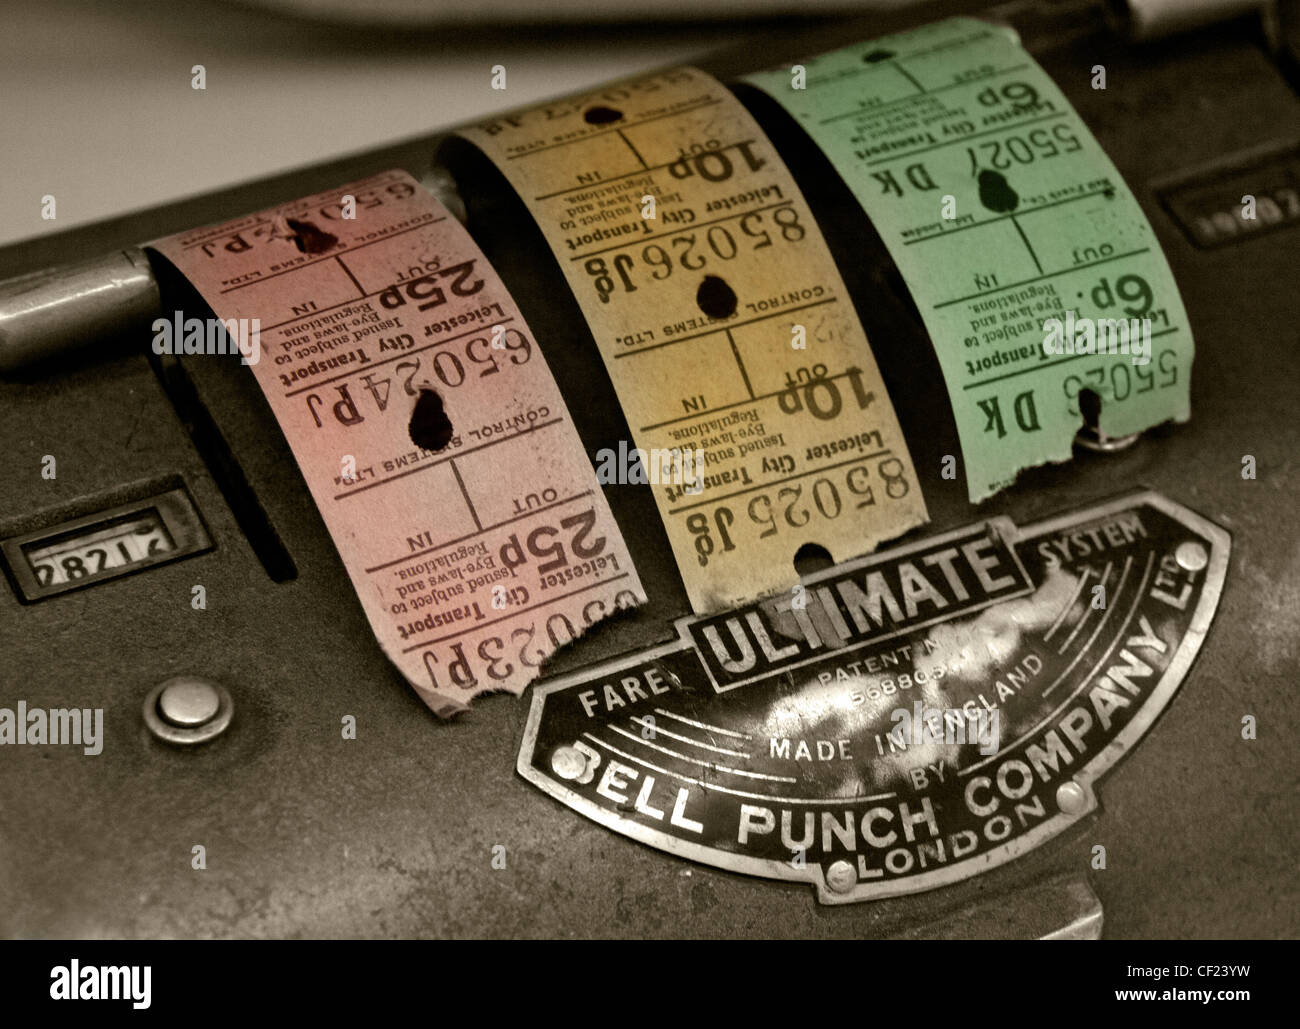 Bell Punch Company ultime Billet de Bus Machine avec billets colorés fabriqués en Angleterre Banque D'Images